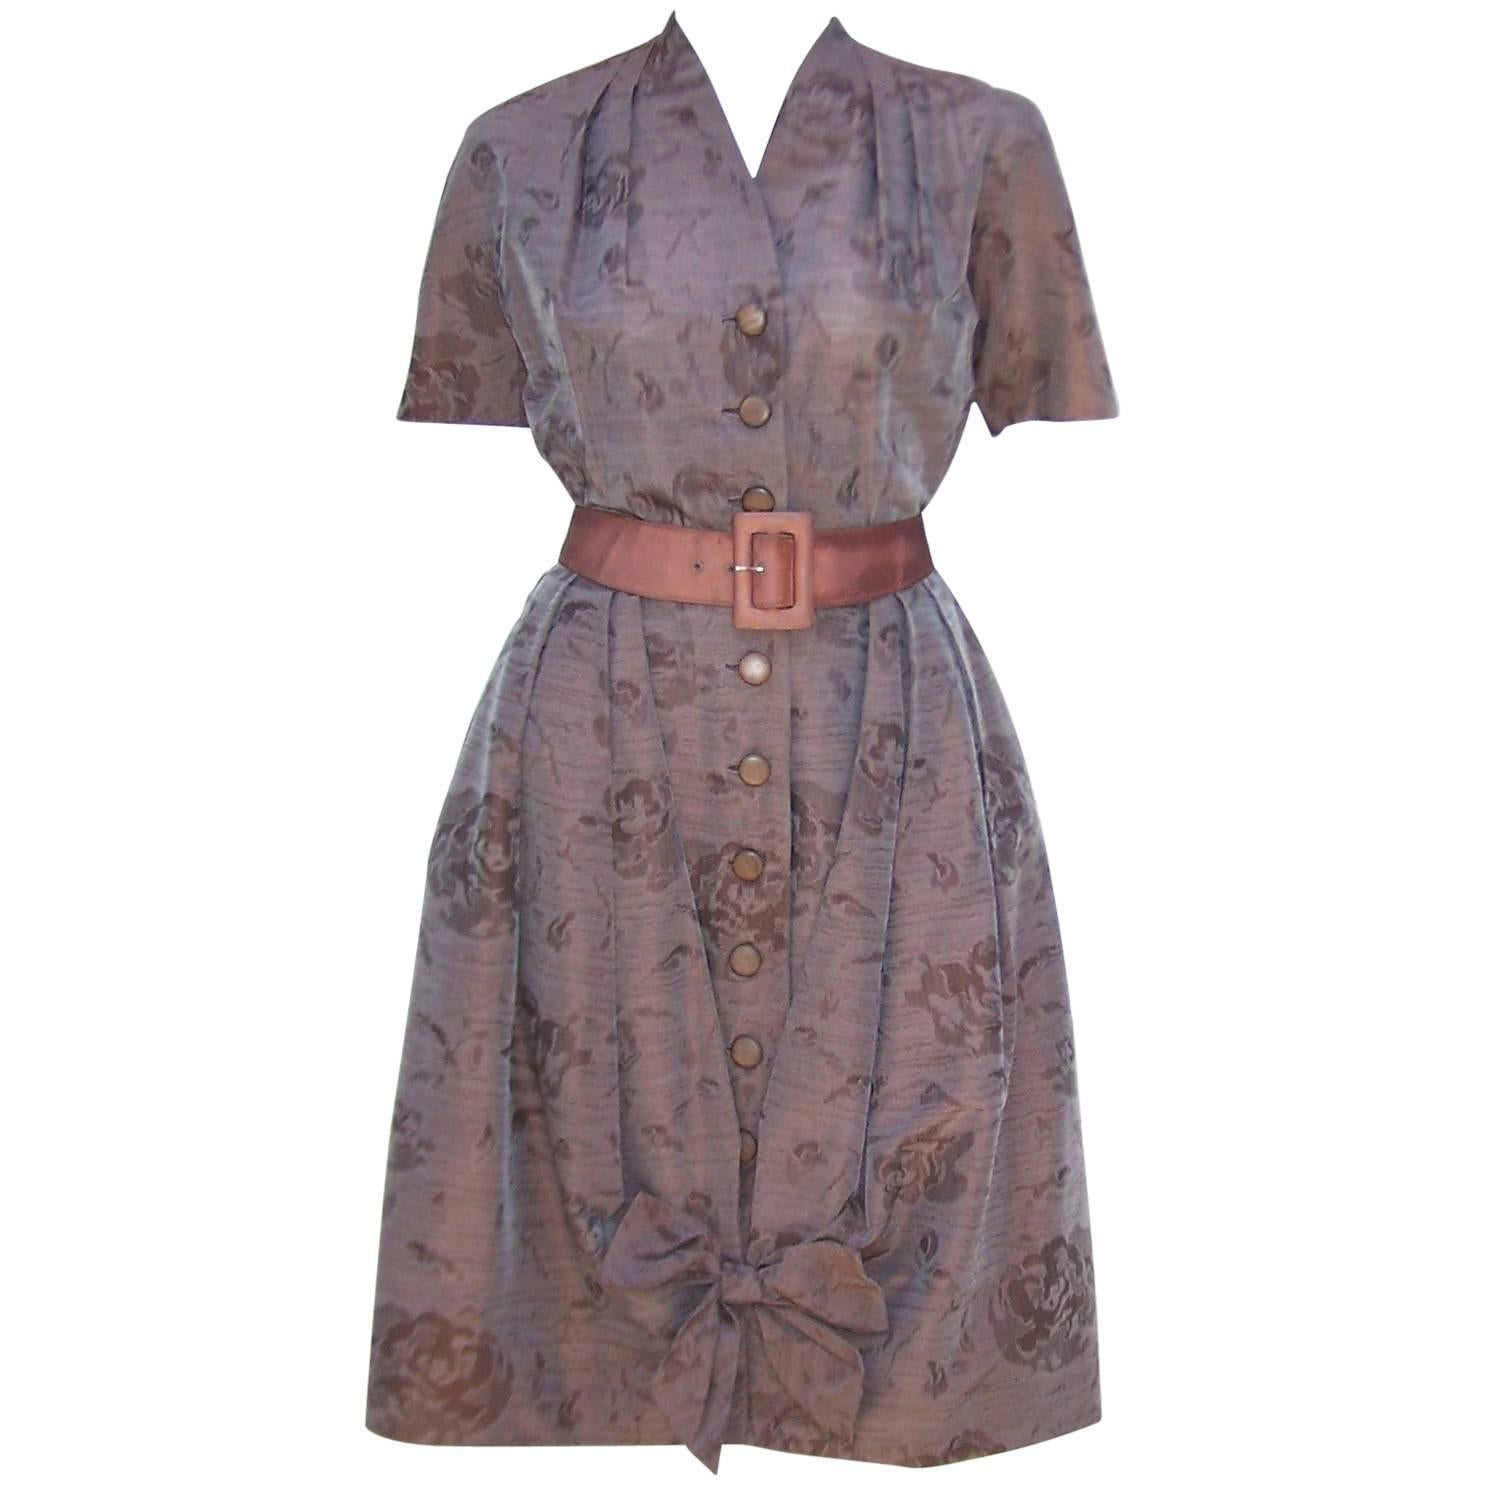 Carlye Brown Polished Cotton Bubble Dress, 1950’s